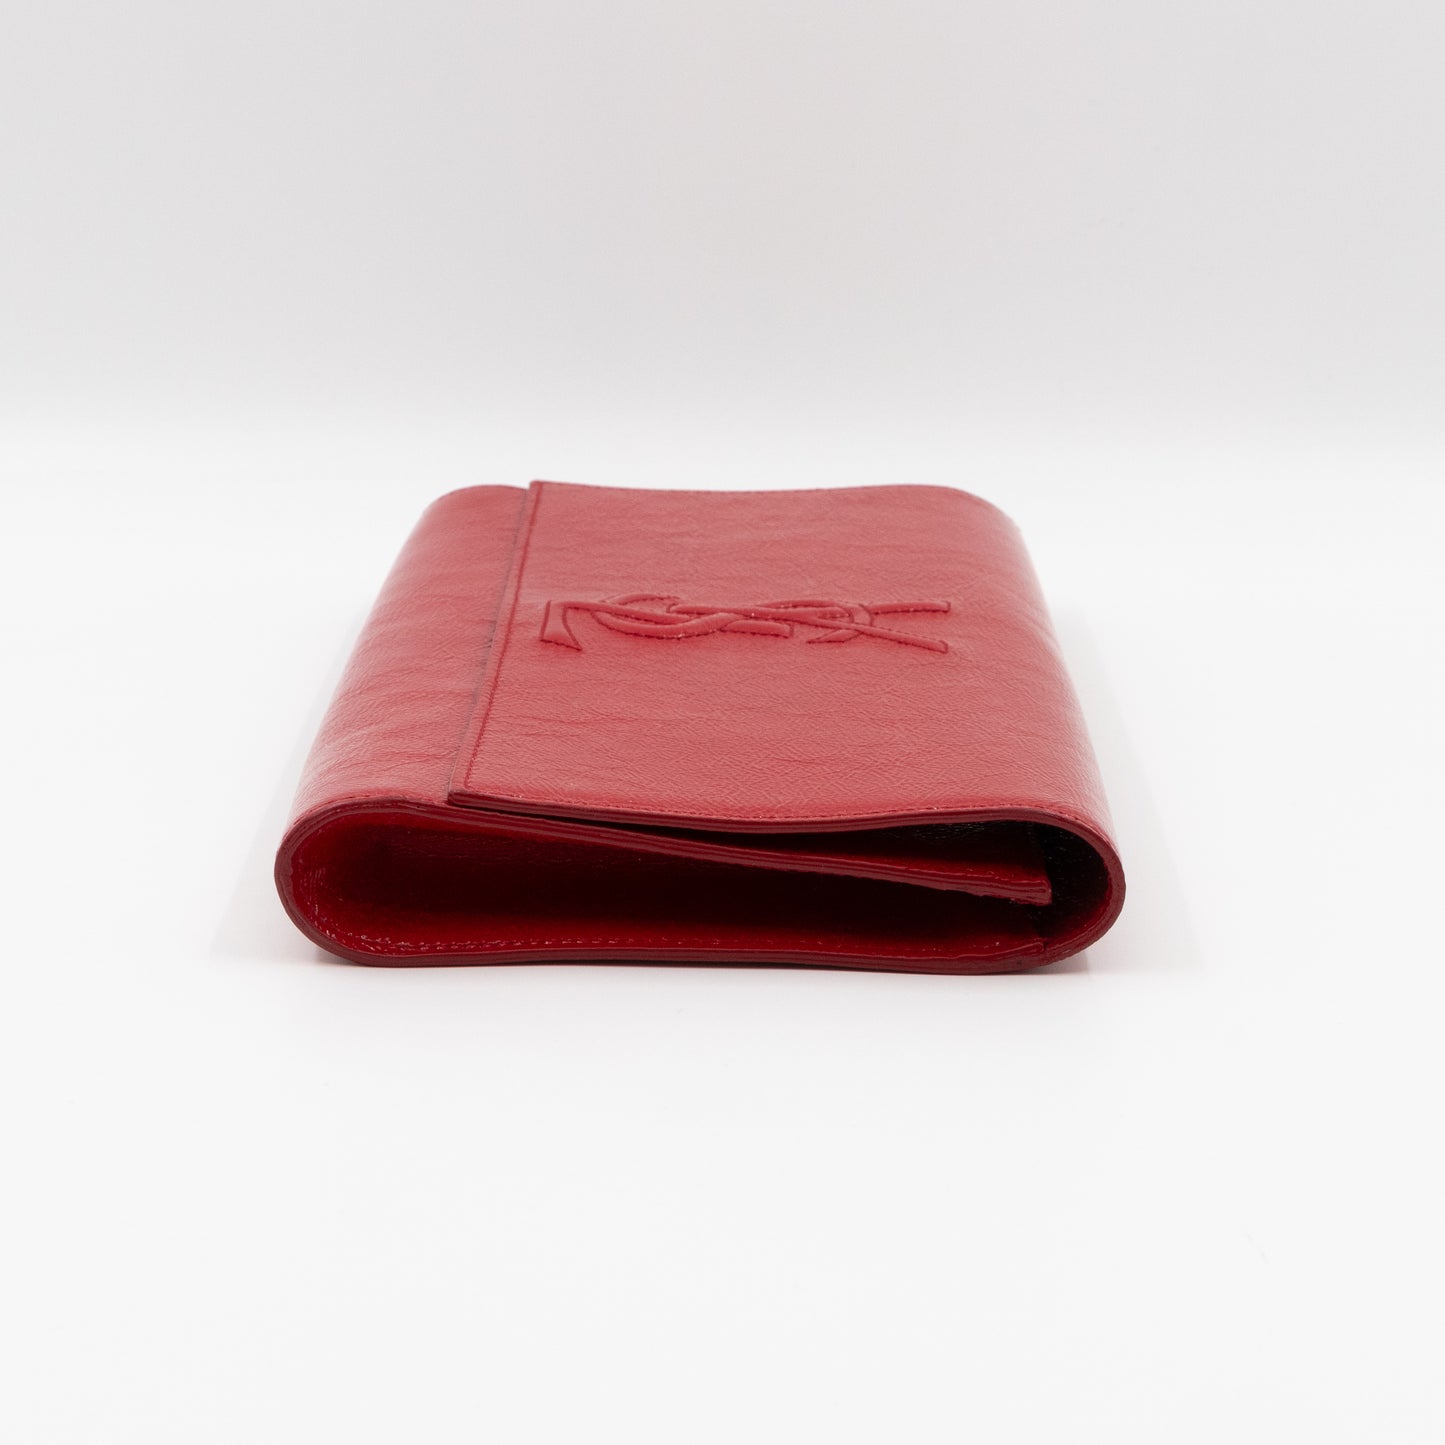 Belle De Jour Clutch Patent Leather Red